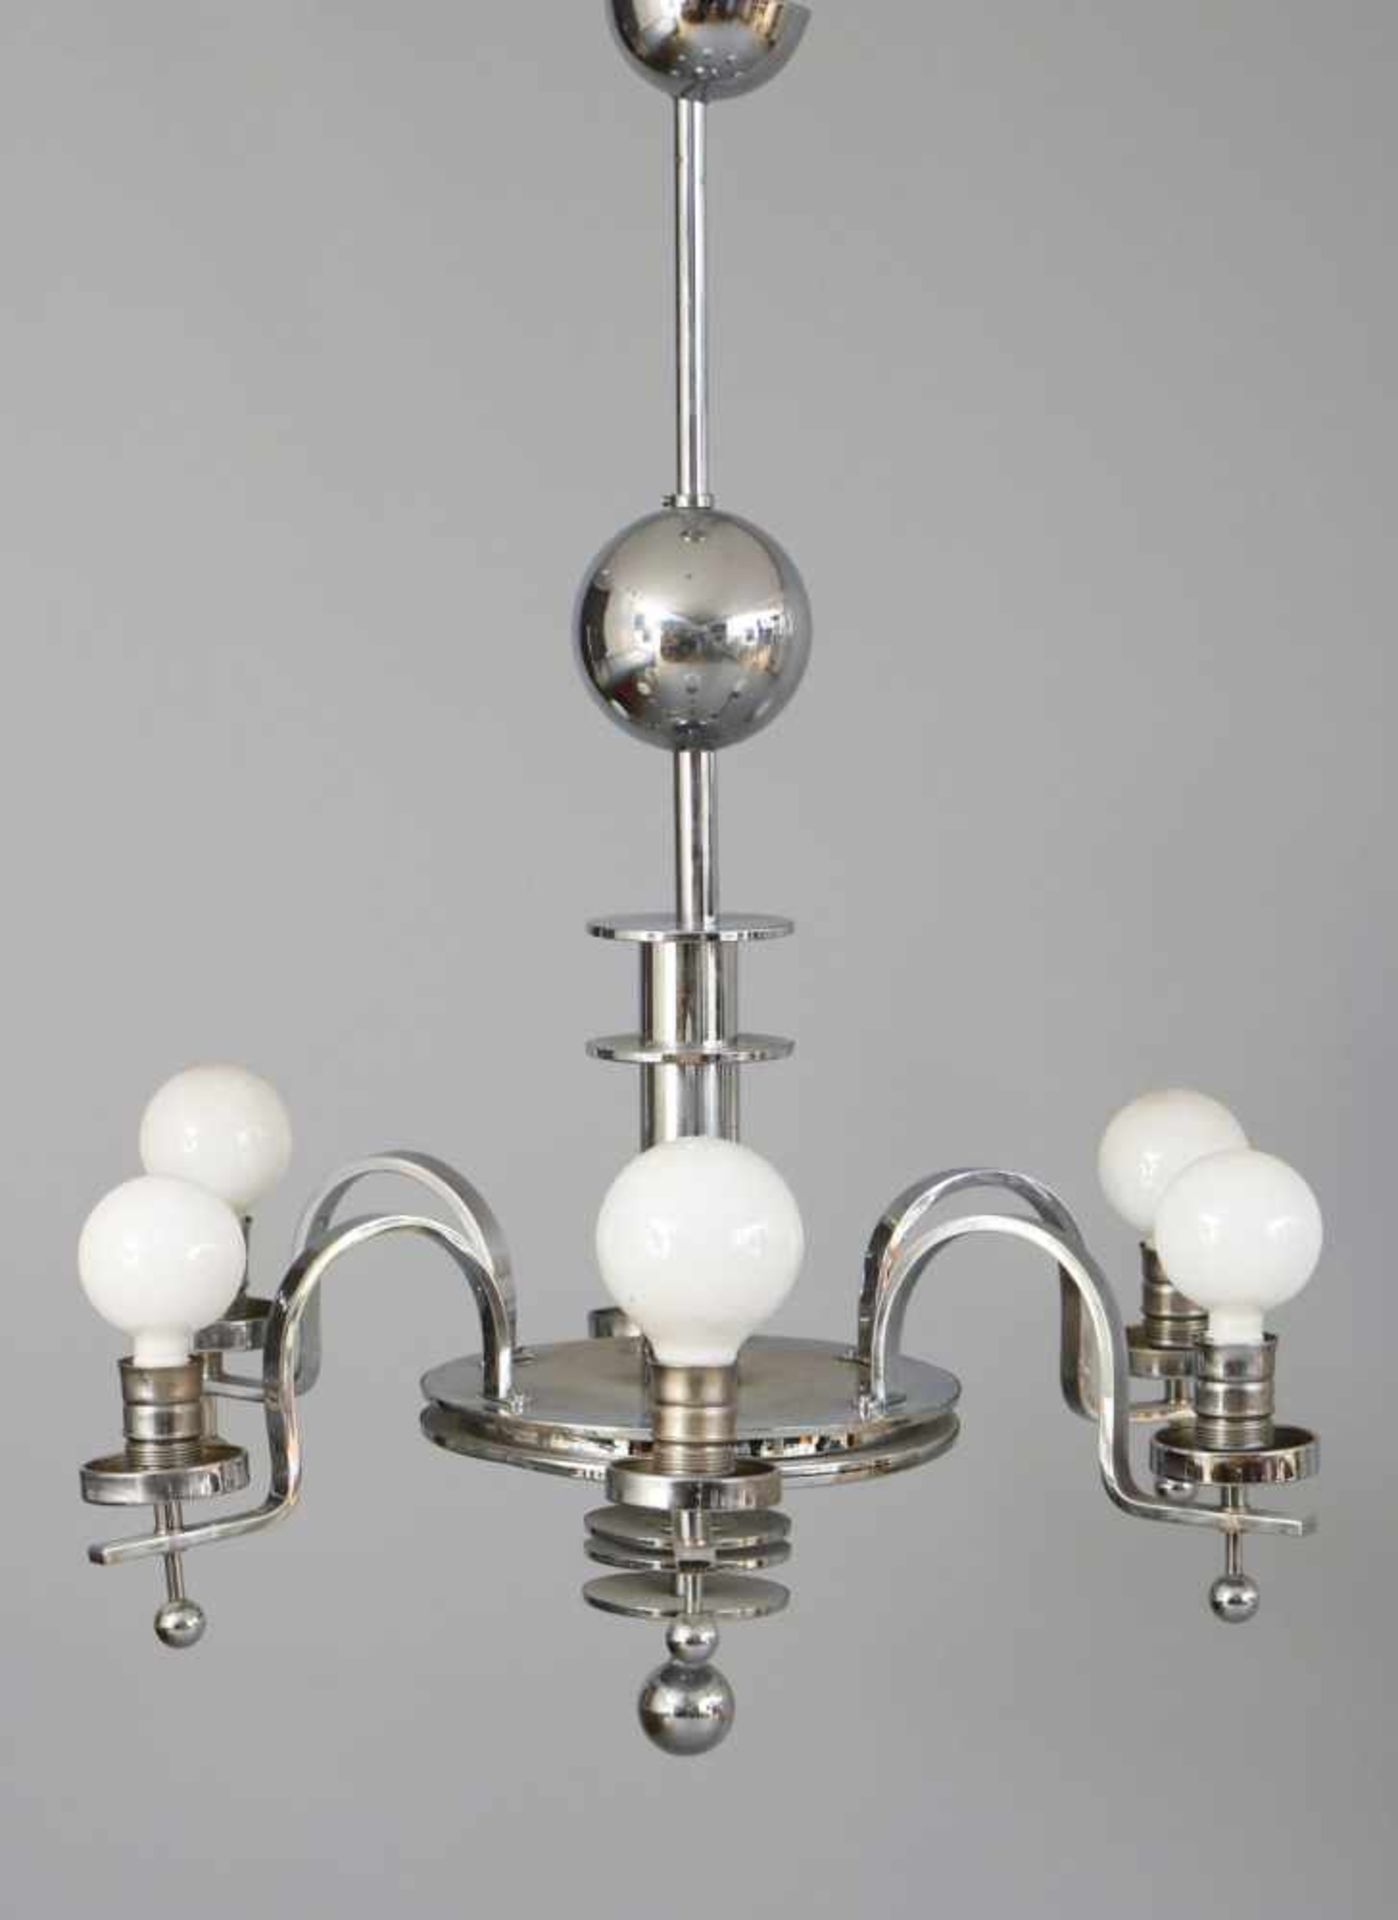 Art Deco Deckenlampeverchromtes Metall, Frankreich, um 1930, 6 elektrifizierte Leuchterarme,